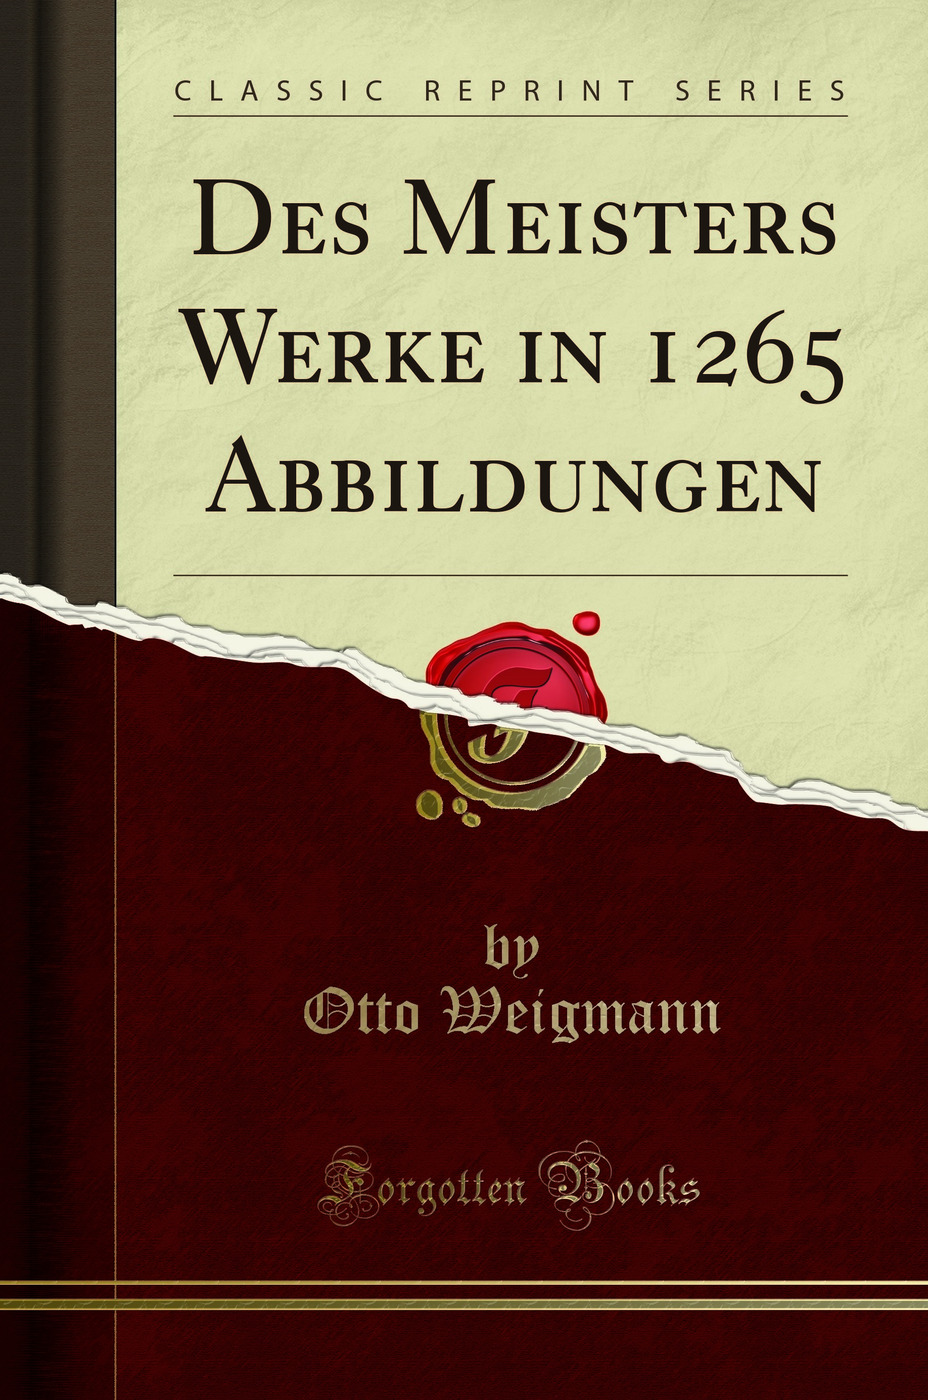 Des Meisters Werke in 1265 Abbildungen (Classic Reprint) - Otto Weigmann